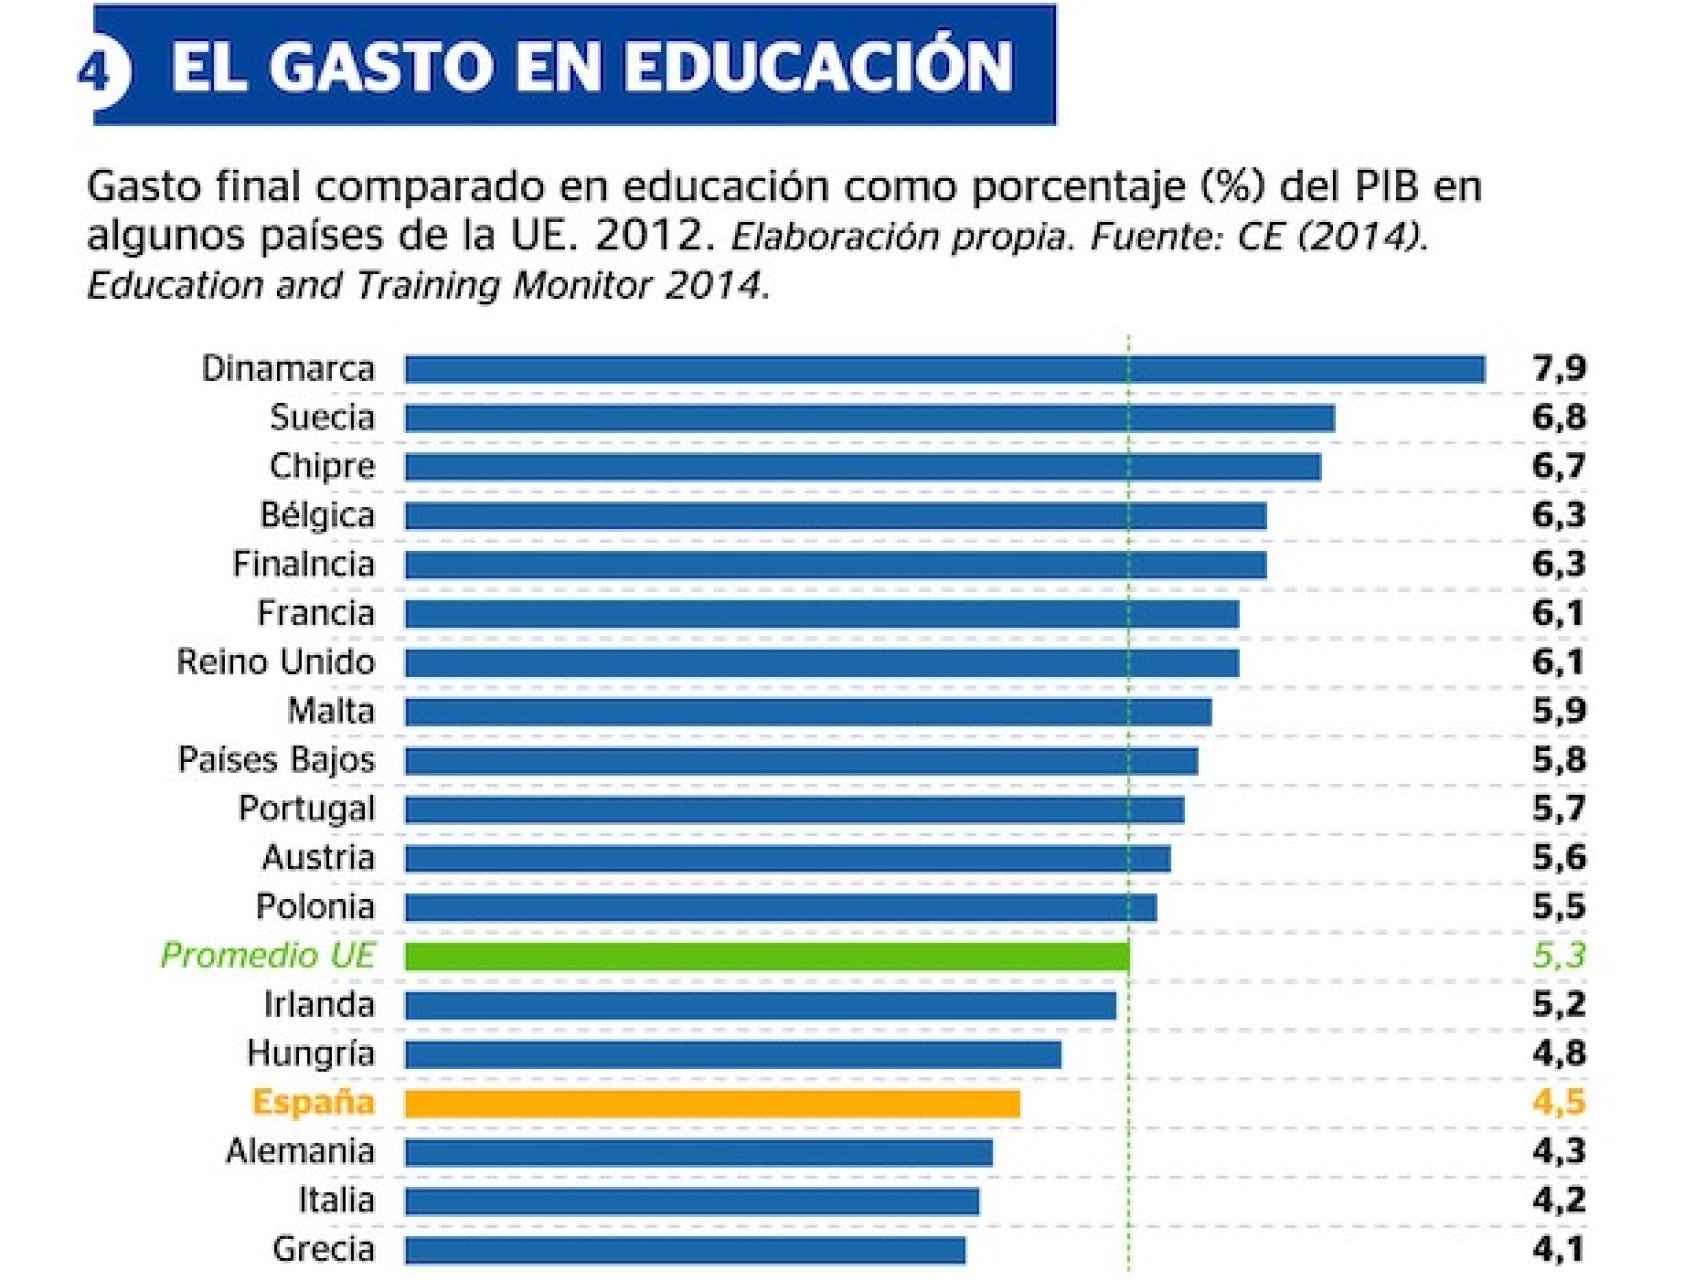 El gasto en Educación en la UE